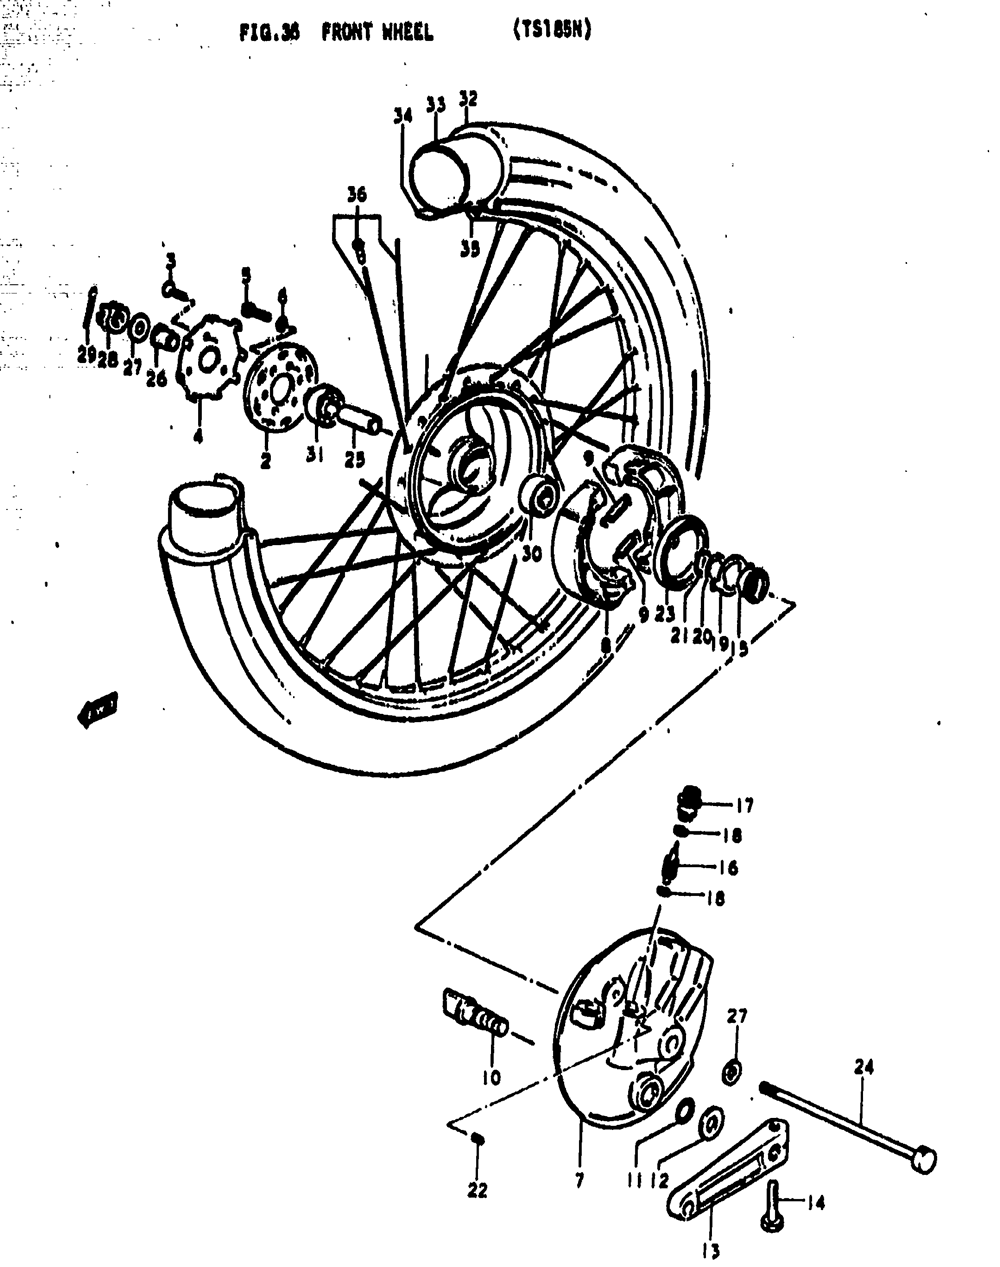 Front wheel (ts185n)